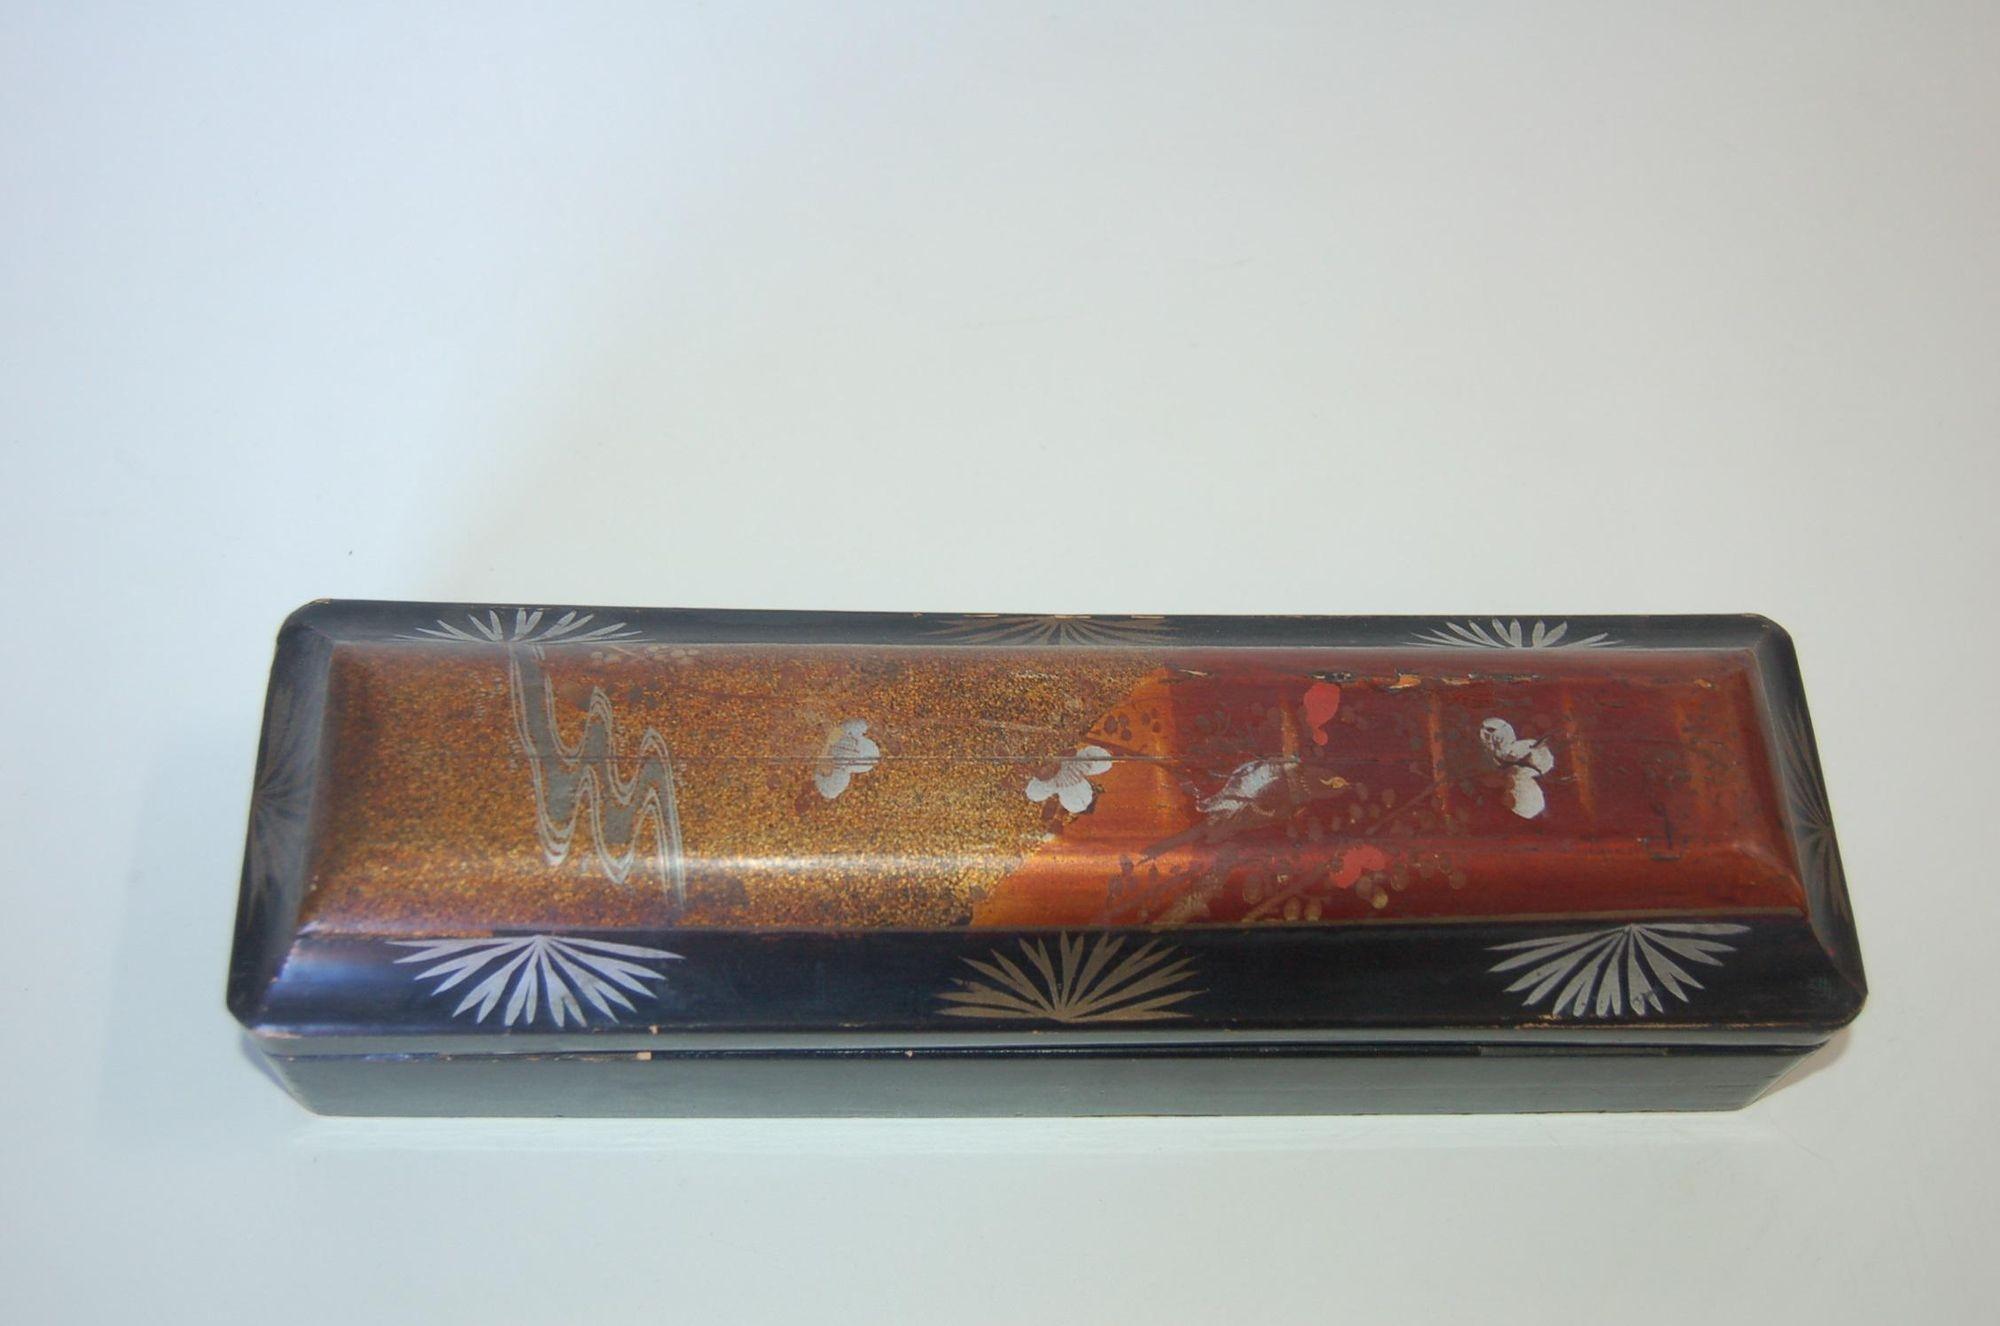 Antike schwarz lackierte japanische Holzschatulle mit skelettiertem Schlüsselloch, CIRCA 1920er Jahre.

Maße: 3